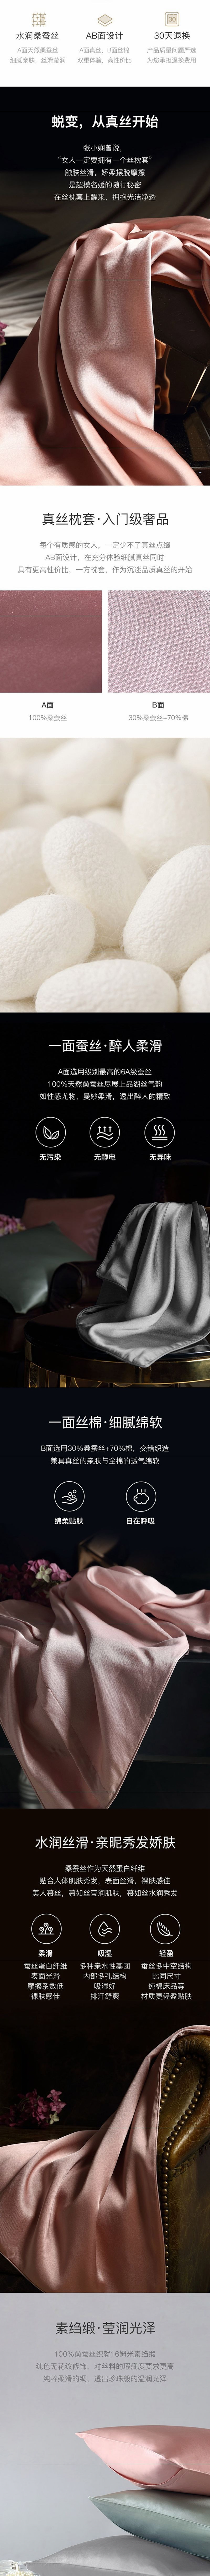 【美仓发货 5-7日达】网易严选 真丝枕套+眼罩 粉色King (枕套粉色20x36英寸+眼罩粉色7.87x4.5英寸)